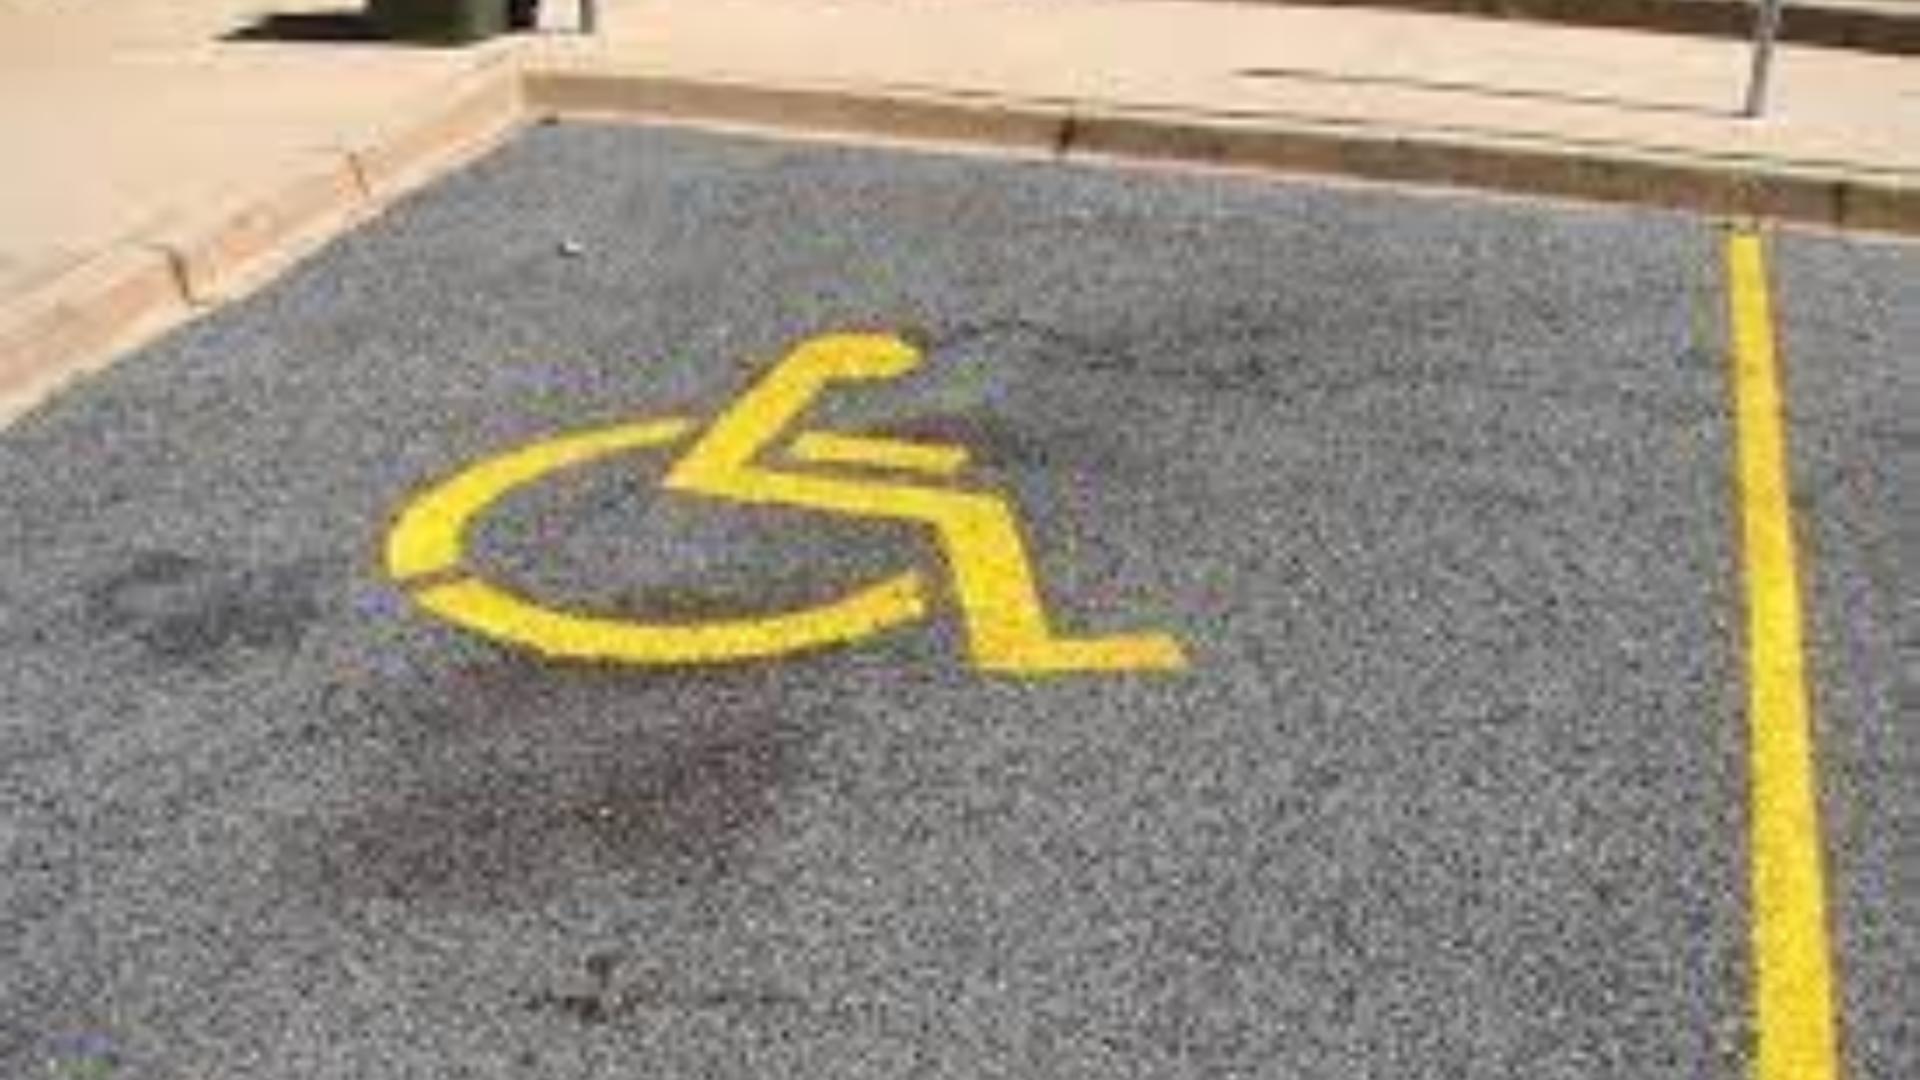 Schema prin care românii obțin locuri de parcare pentru persoane cu handicap